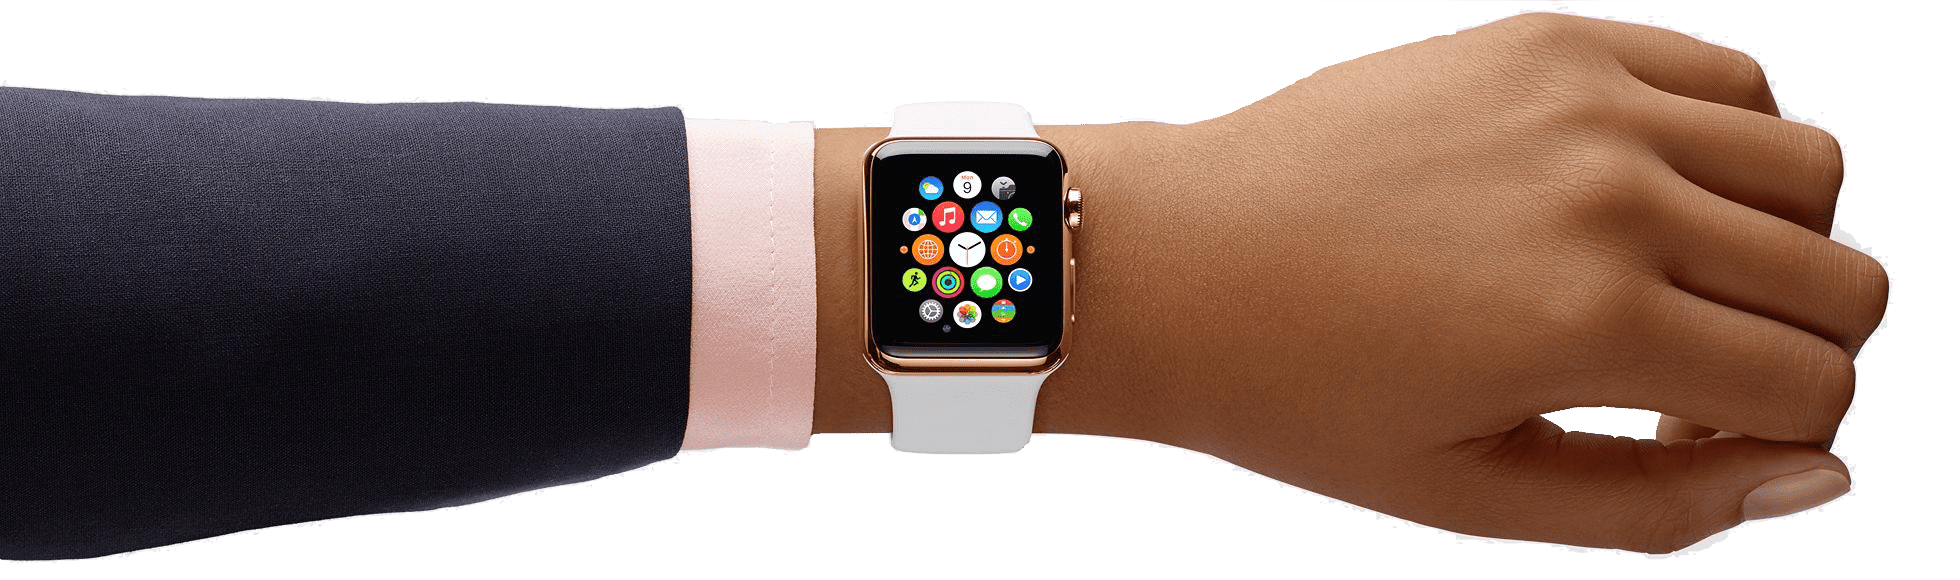 Apple lance un nouveau Macbook et l'Apple Watch 4